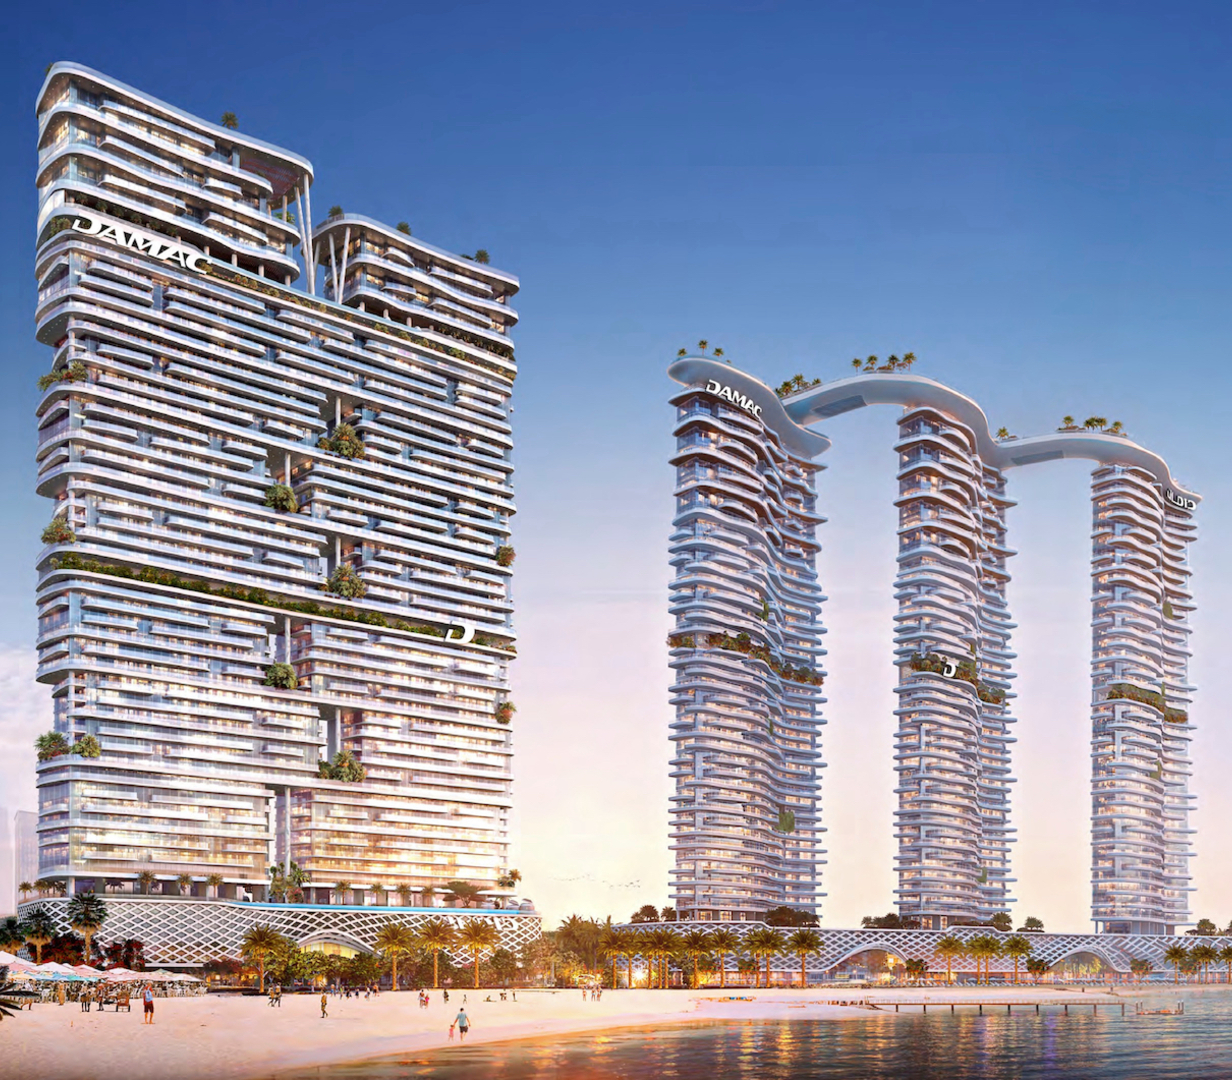 Luxuriöse Strandresidenz in Dubai Marina, inspiriert von der italienischen Modemarke Cavalli